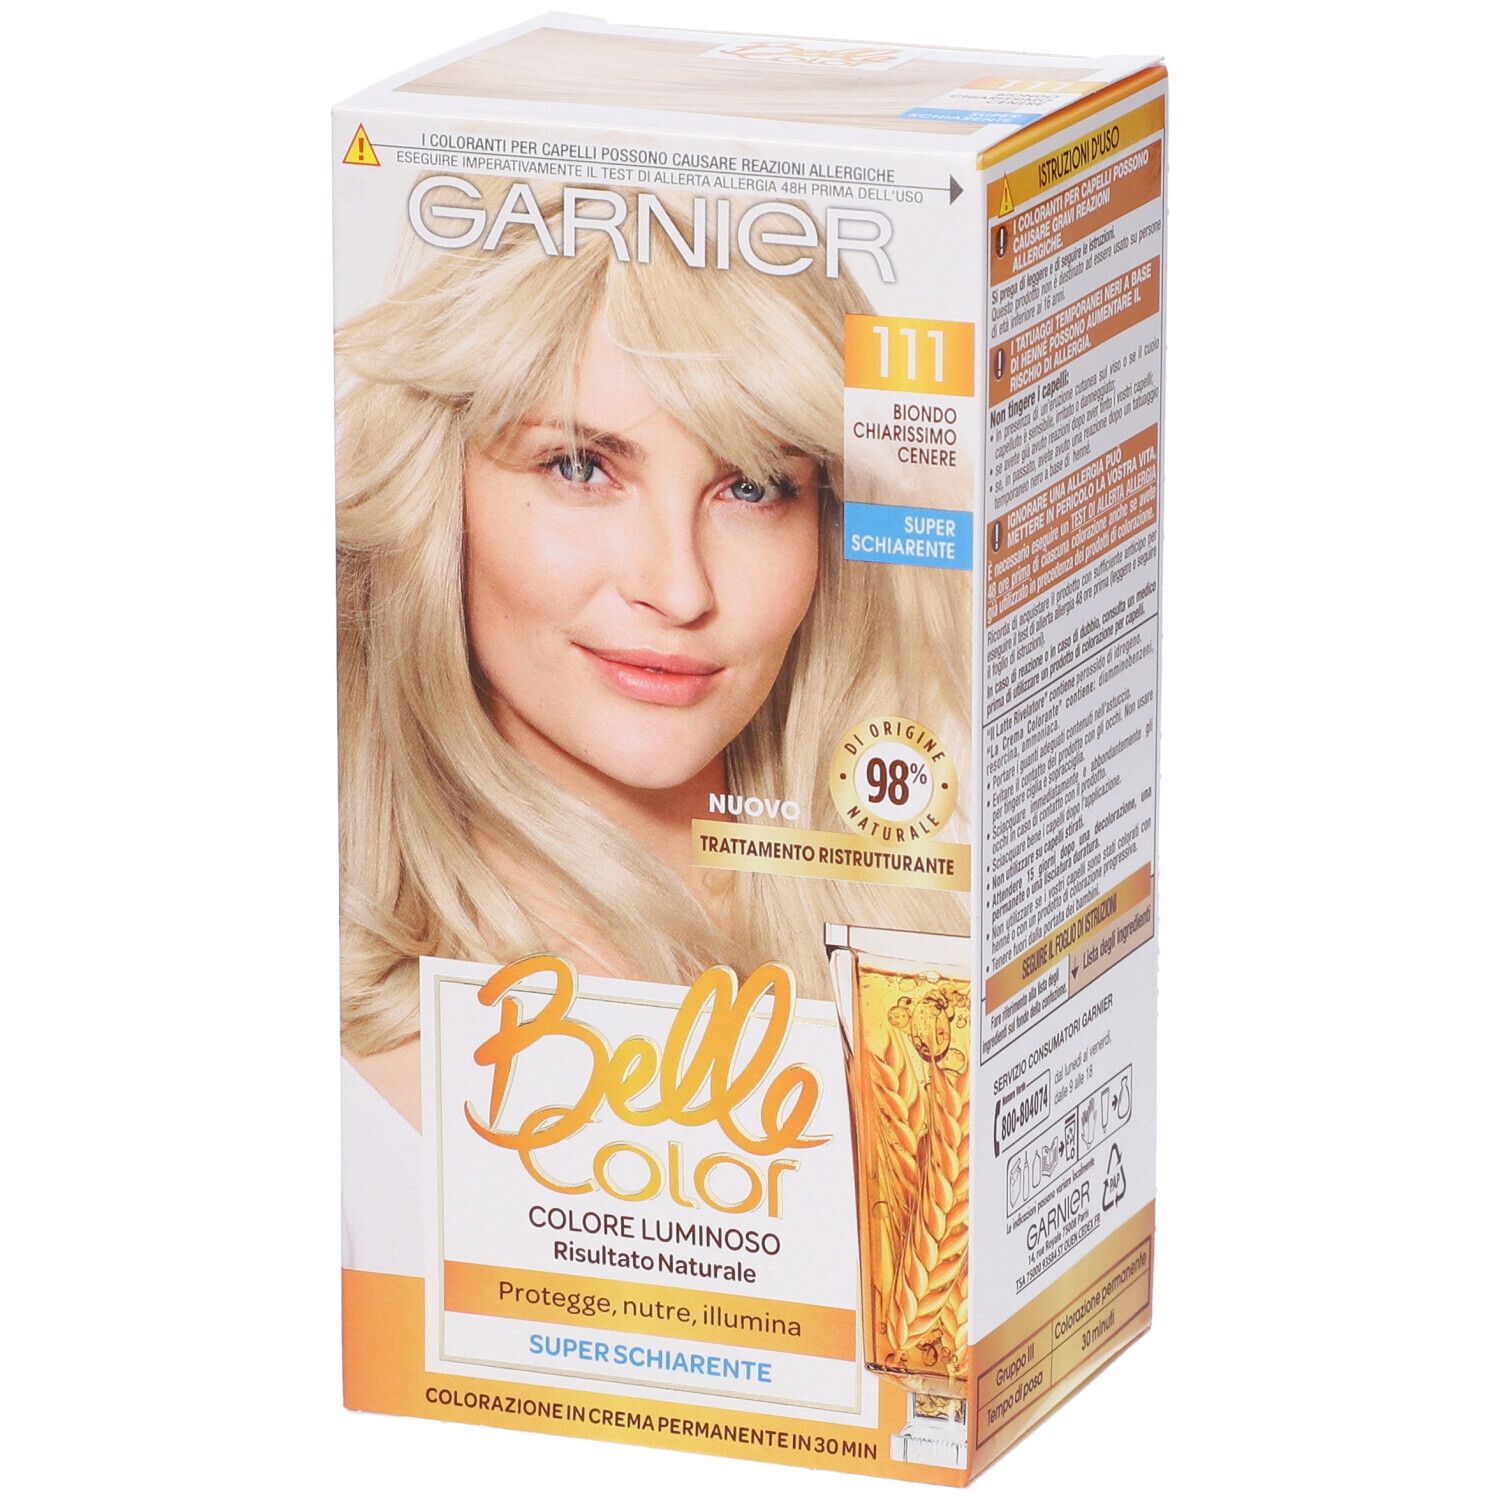 Image of Garnier Tinta Capelli Belle Color, Colore Luminoso e Riflessi Naturali, Copre il 100% dei capelli bianchi, Biondo Chiarissimo Cenere Naturale